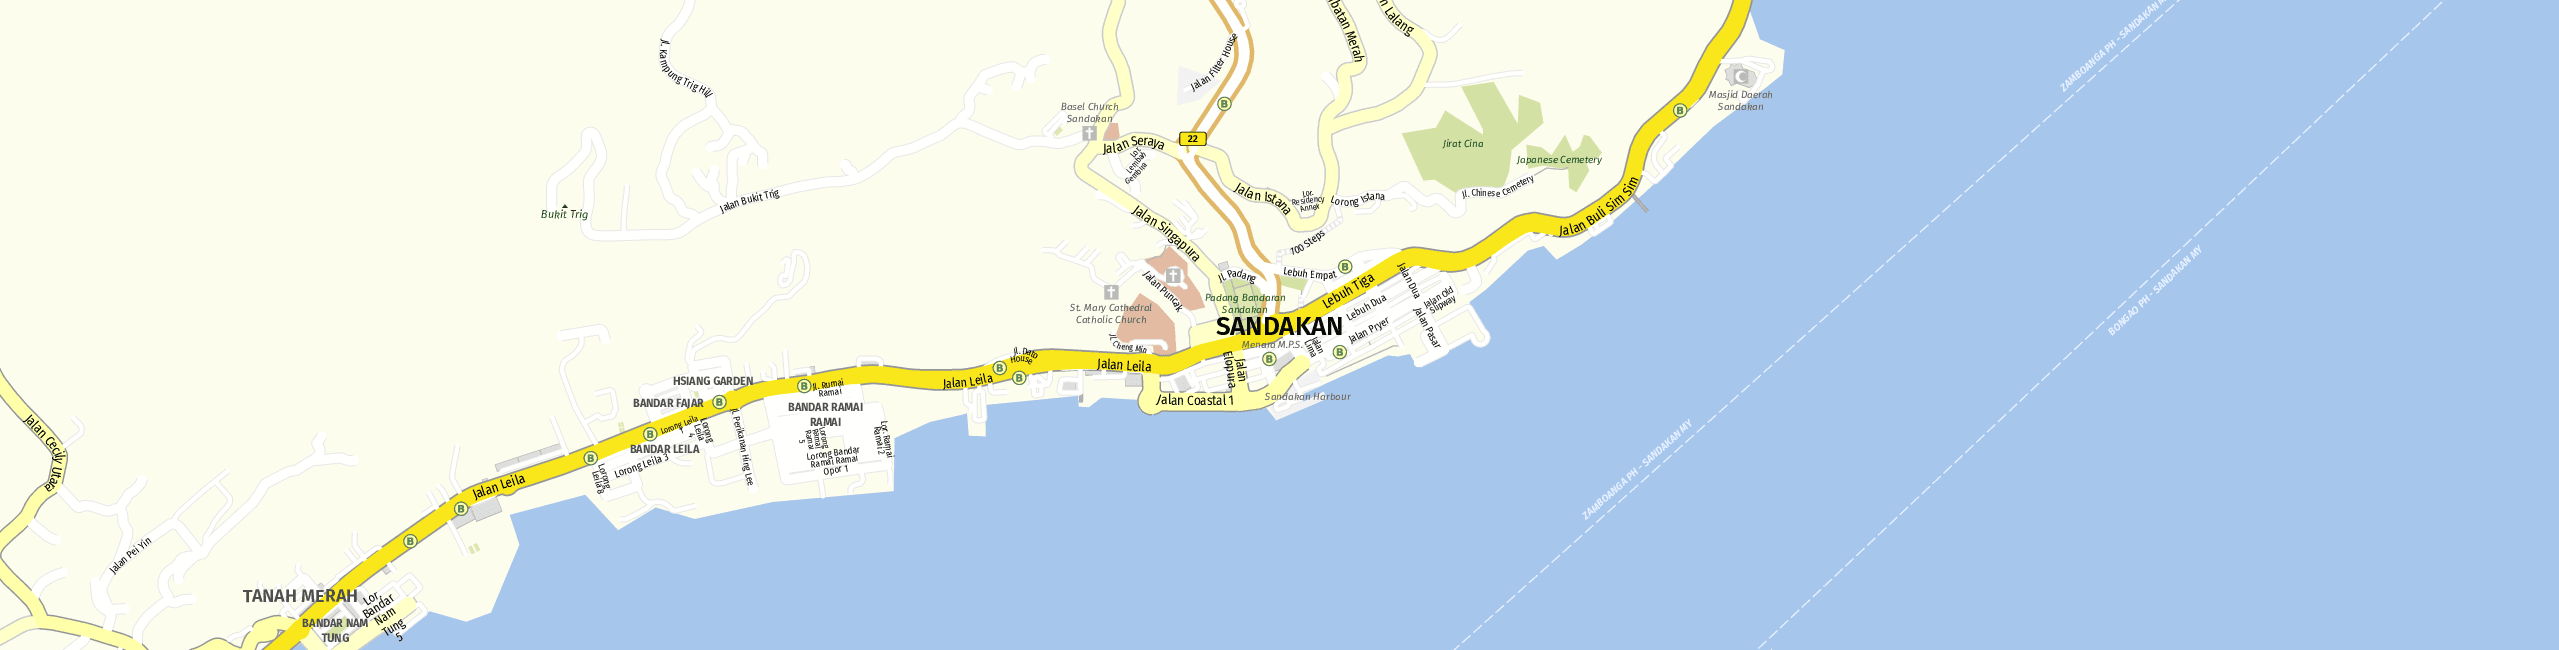 Stadtplan Sandakan zum Downloaden.